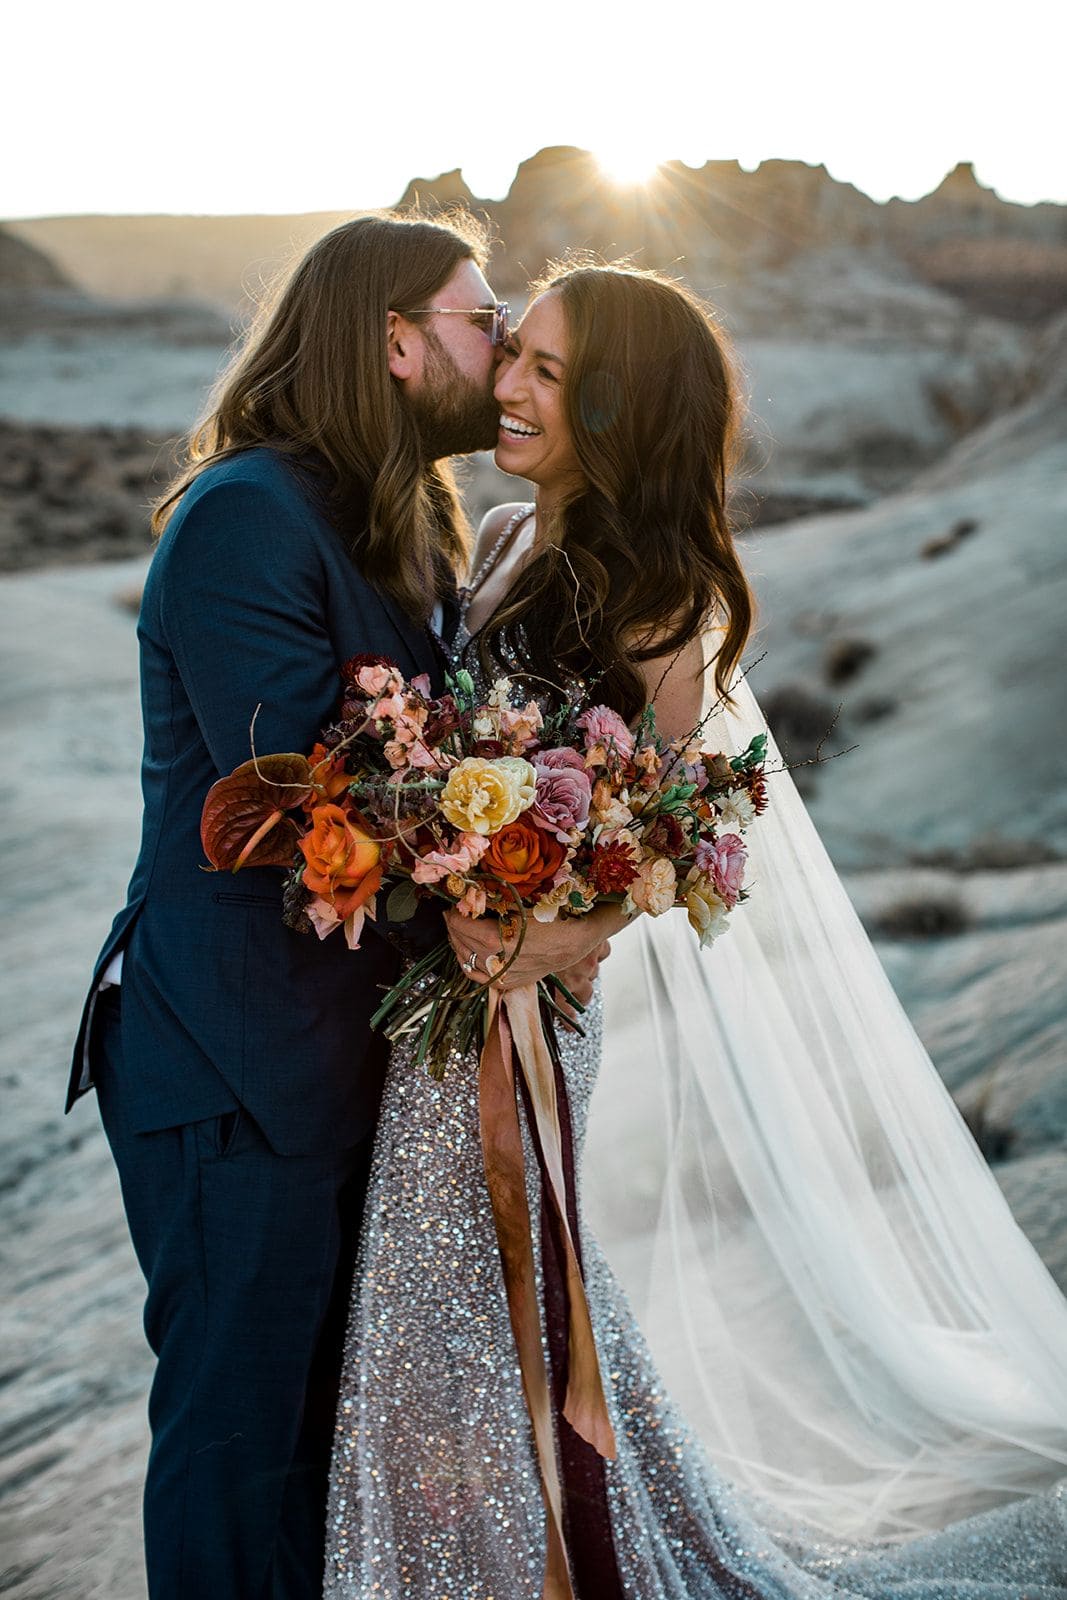 Groom kisses bride's cheek in middle of Utah desert